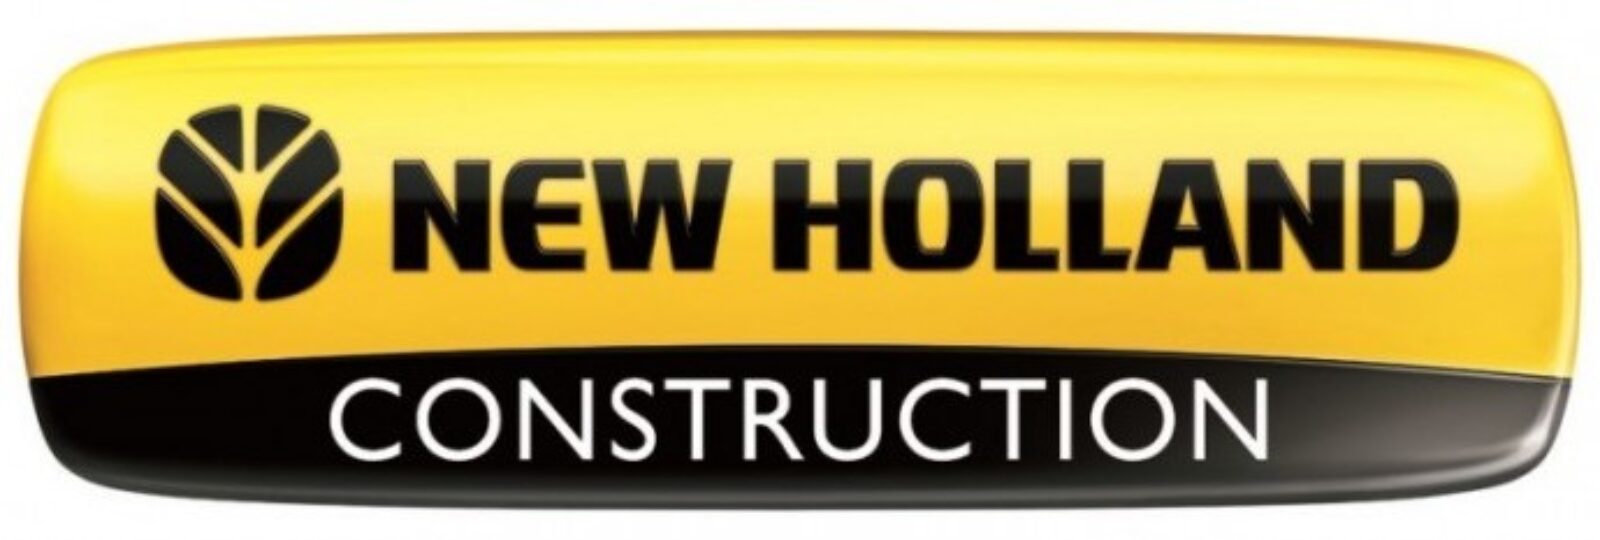 New Holland Construction. Ahora disponible en Segovia